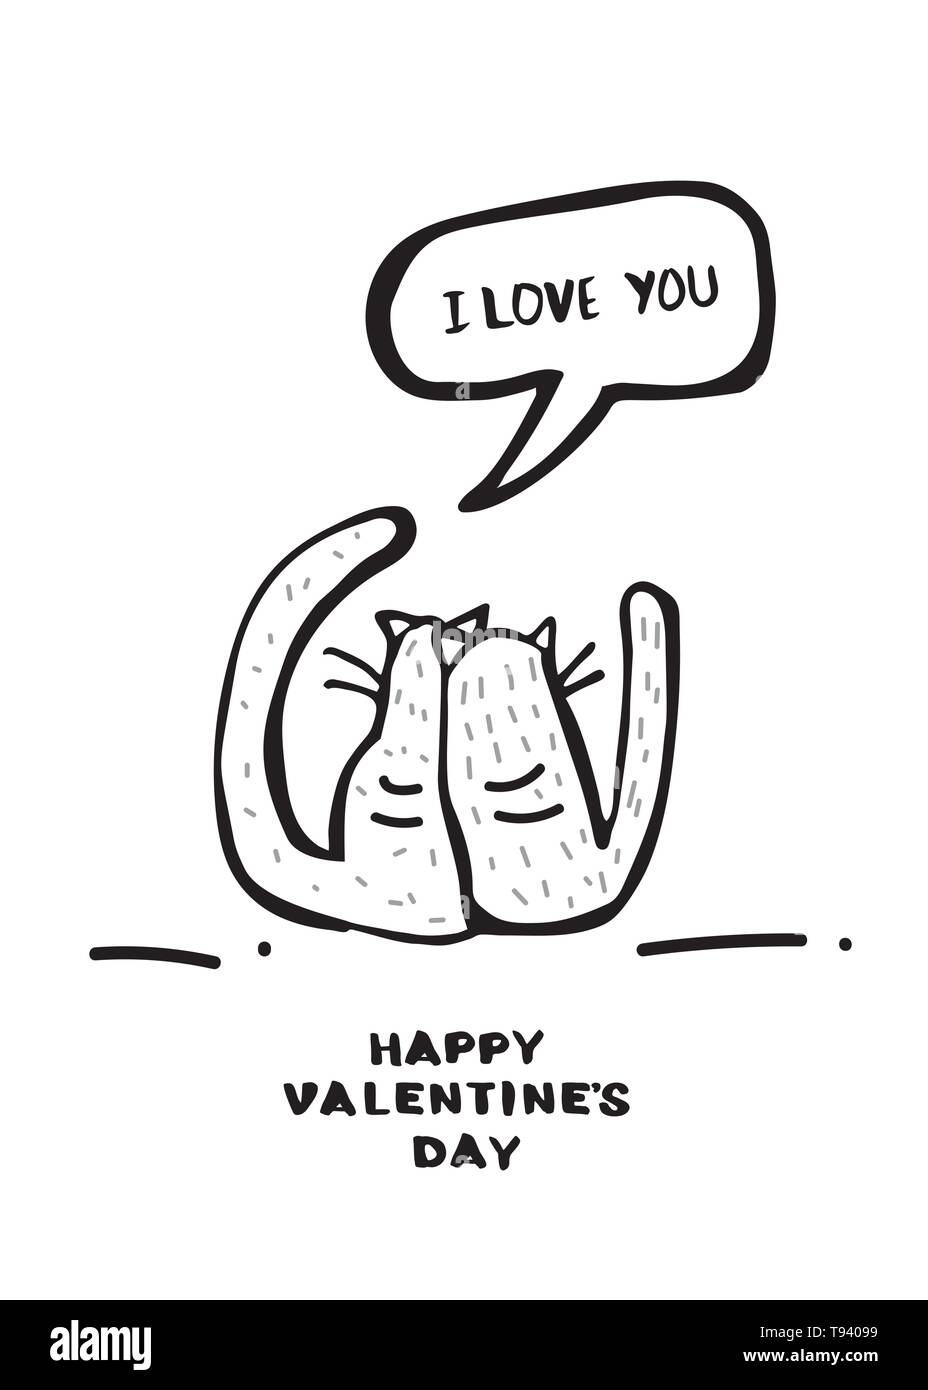 Happy Valentines Tag Grußkartenvorlage. Handschriftliche Beschriftung mit Katzen in schwarz-weiß Design. Vector Illustration. Stock Vektor